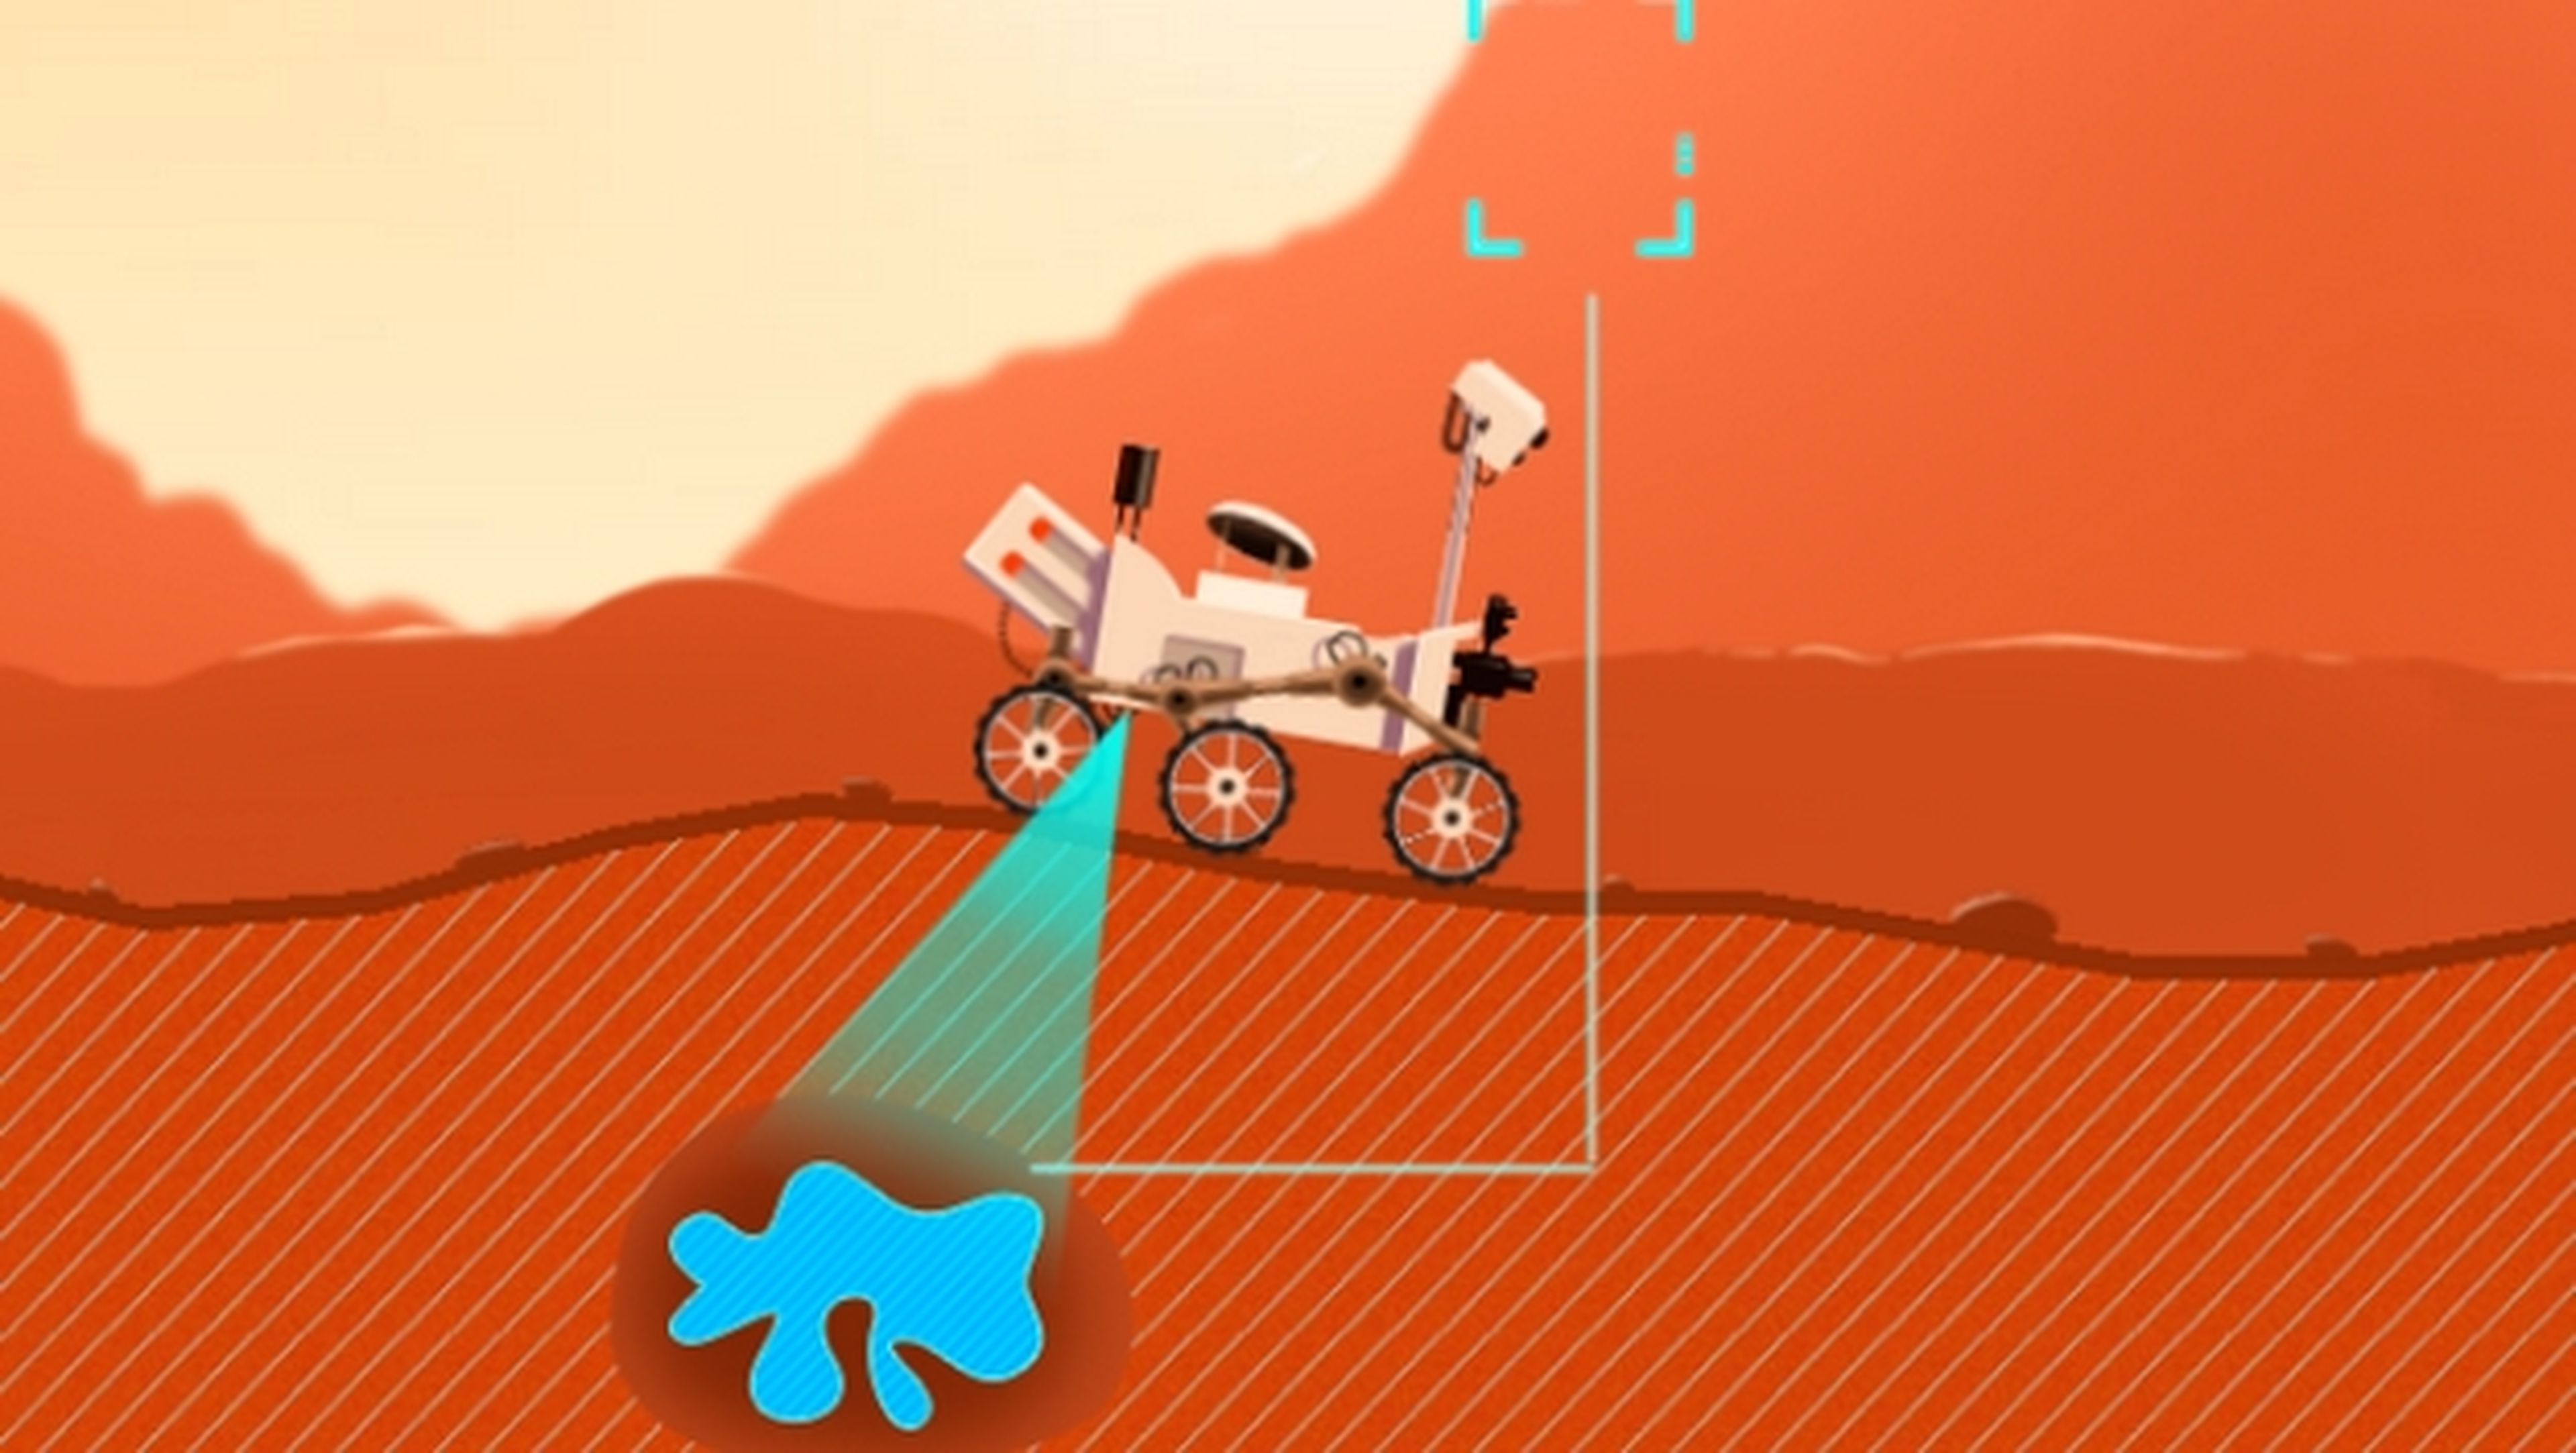 Celebra el quinto cumpleaños del robot Curiosity con un juego gratuito